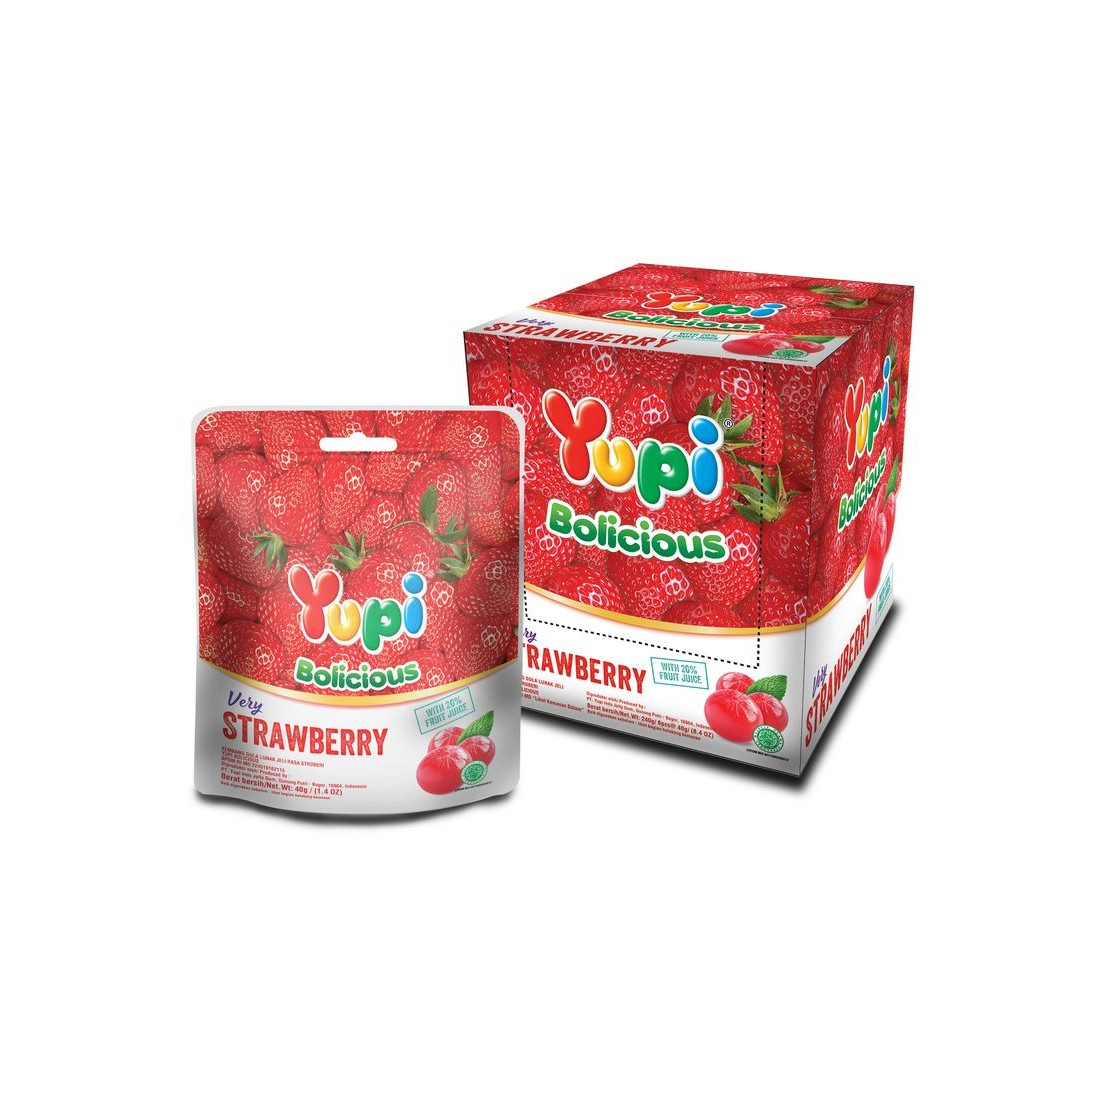 Yupi 40G Bolicious Strawberry